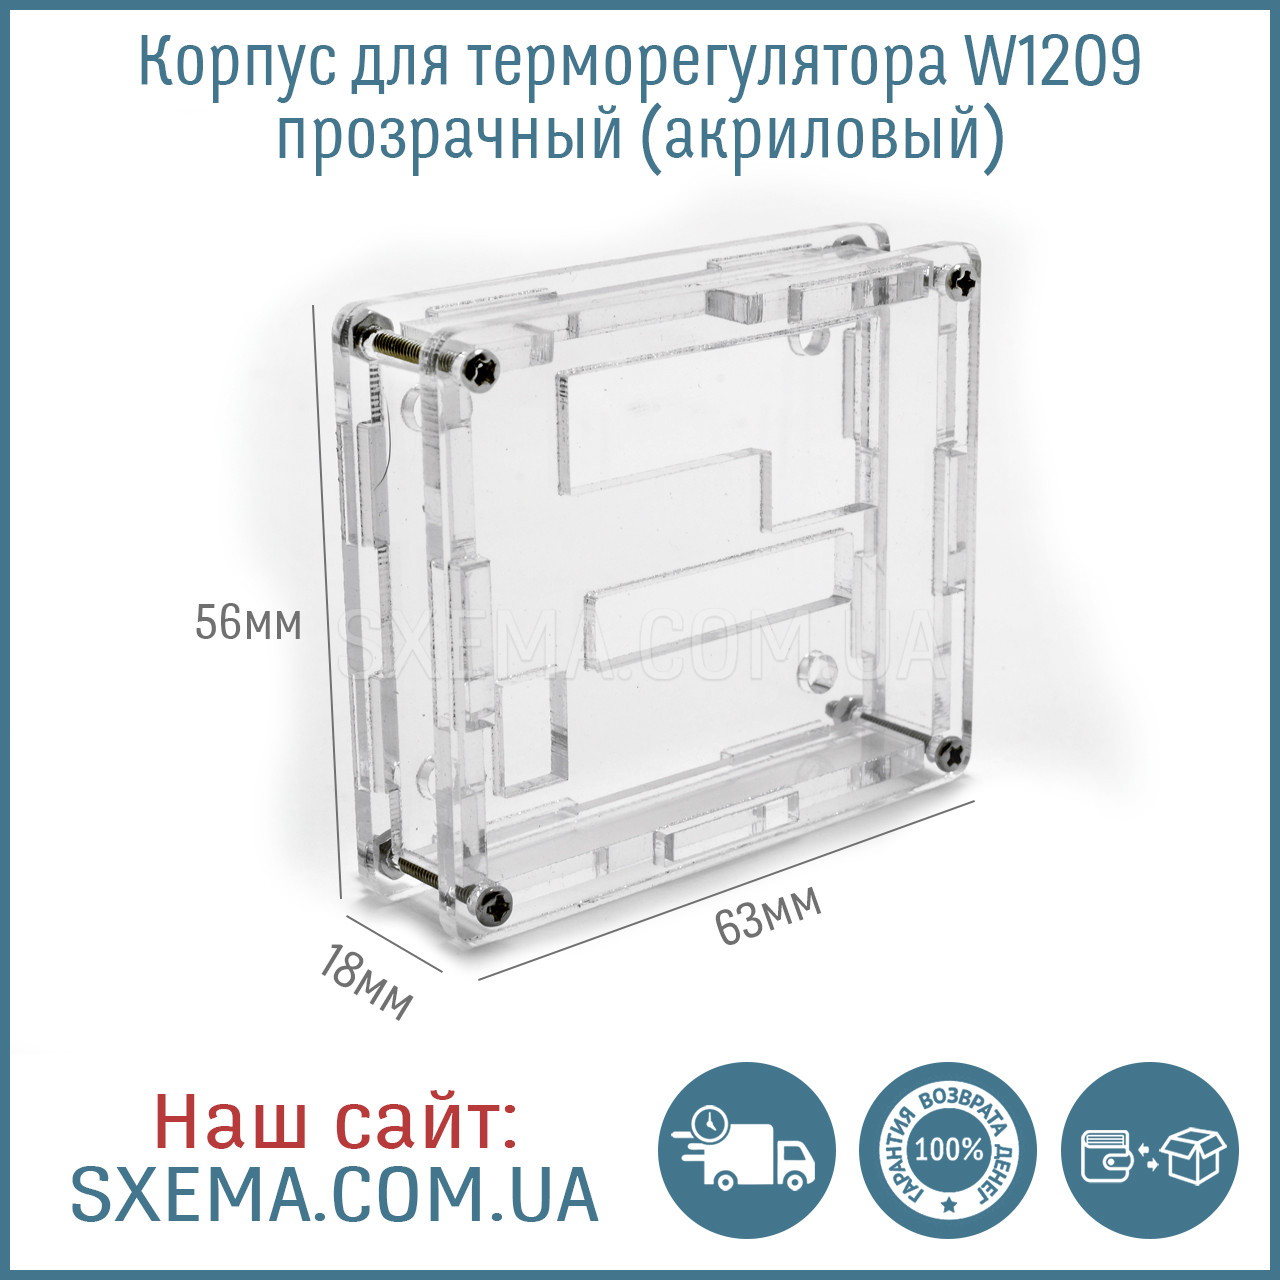 Корпус для терморегулятора W1209 прозорий